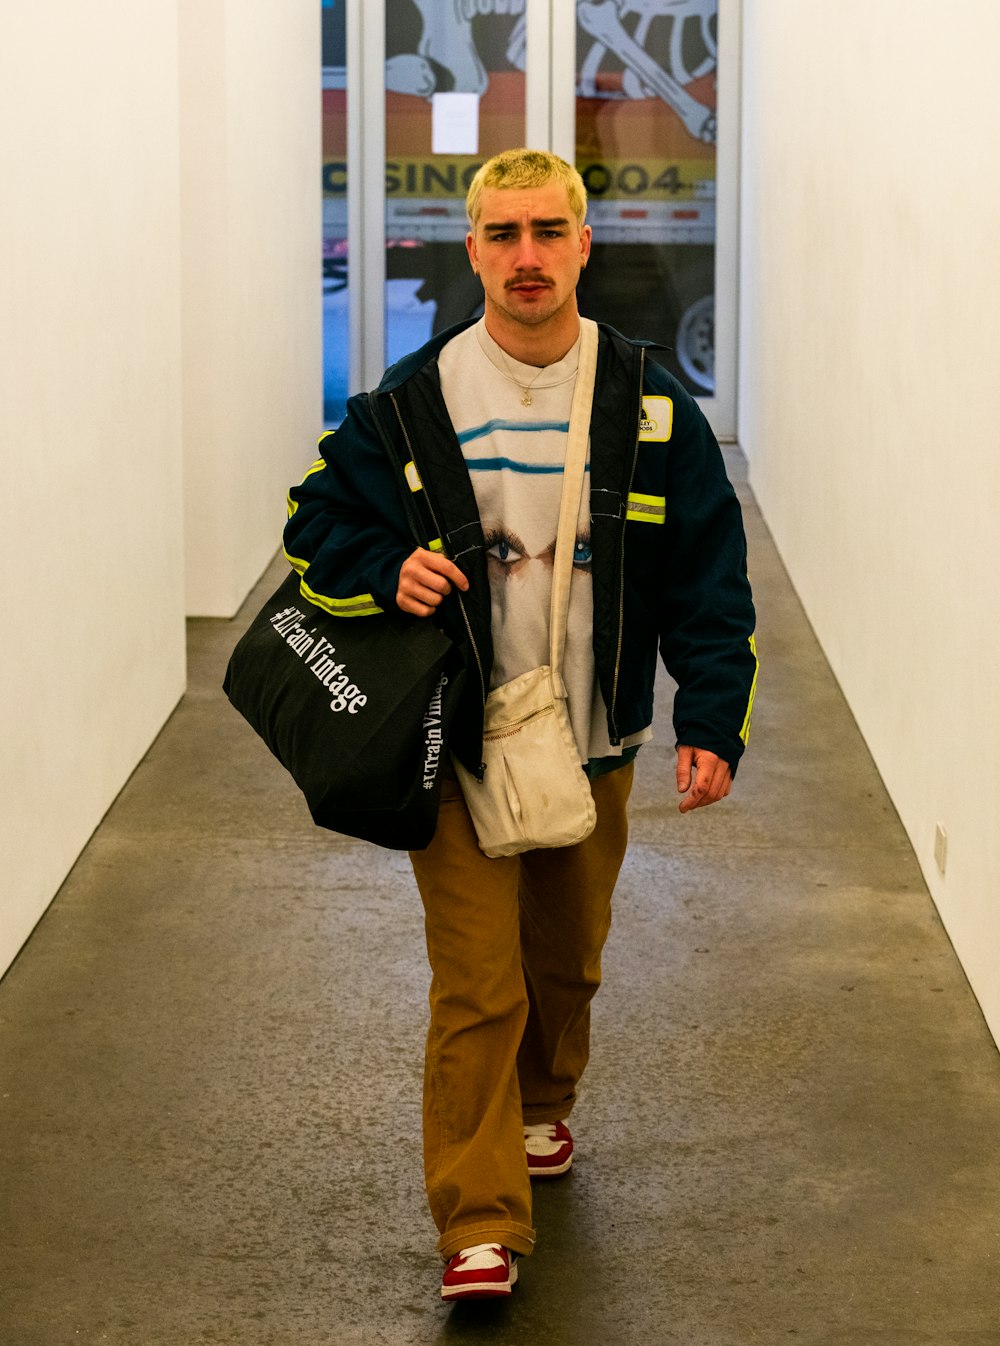 Un homme marchant dans un couloir portant un sac